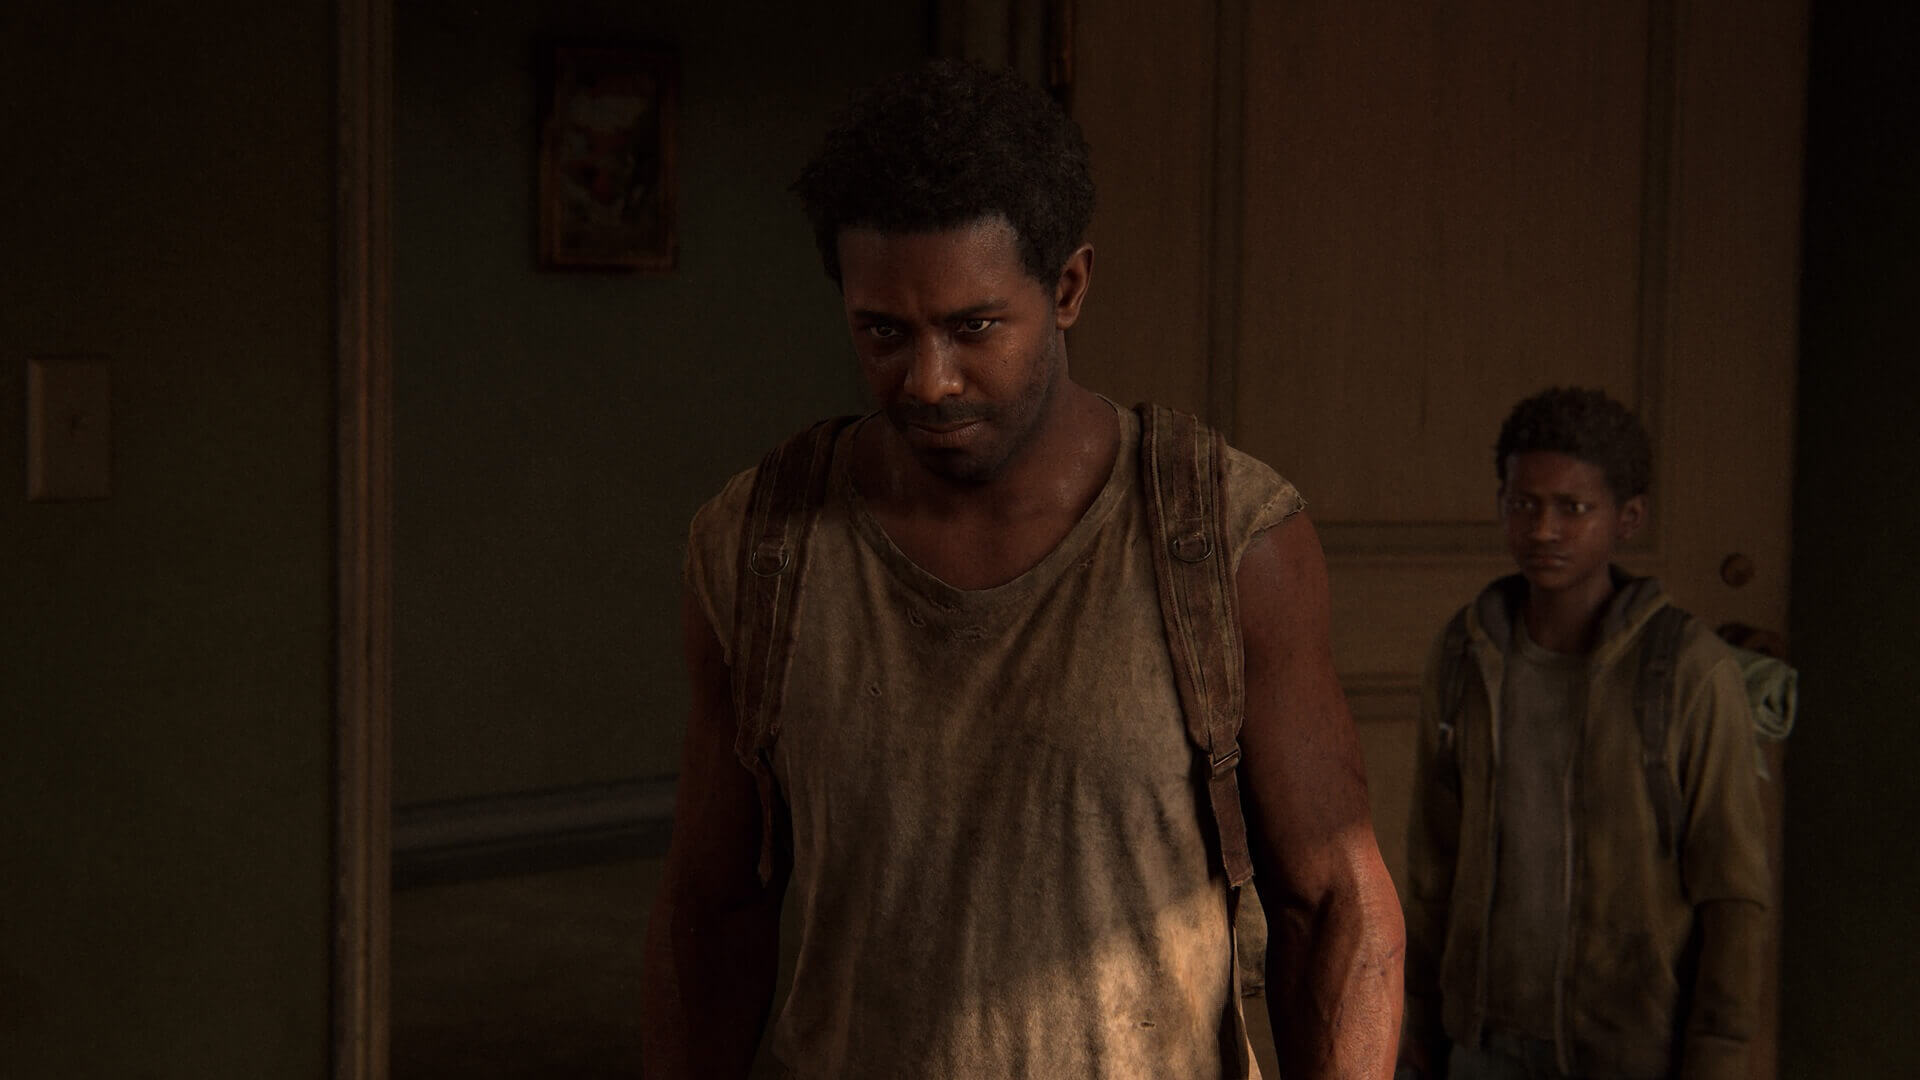 The Last of Us: Part I” é um remake espetacular. Mas deveria ser mais  barato